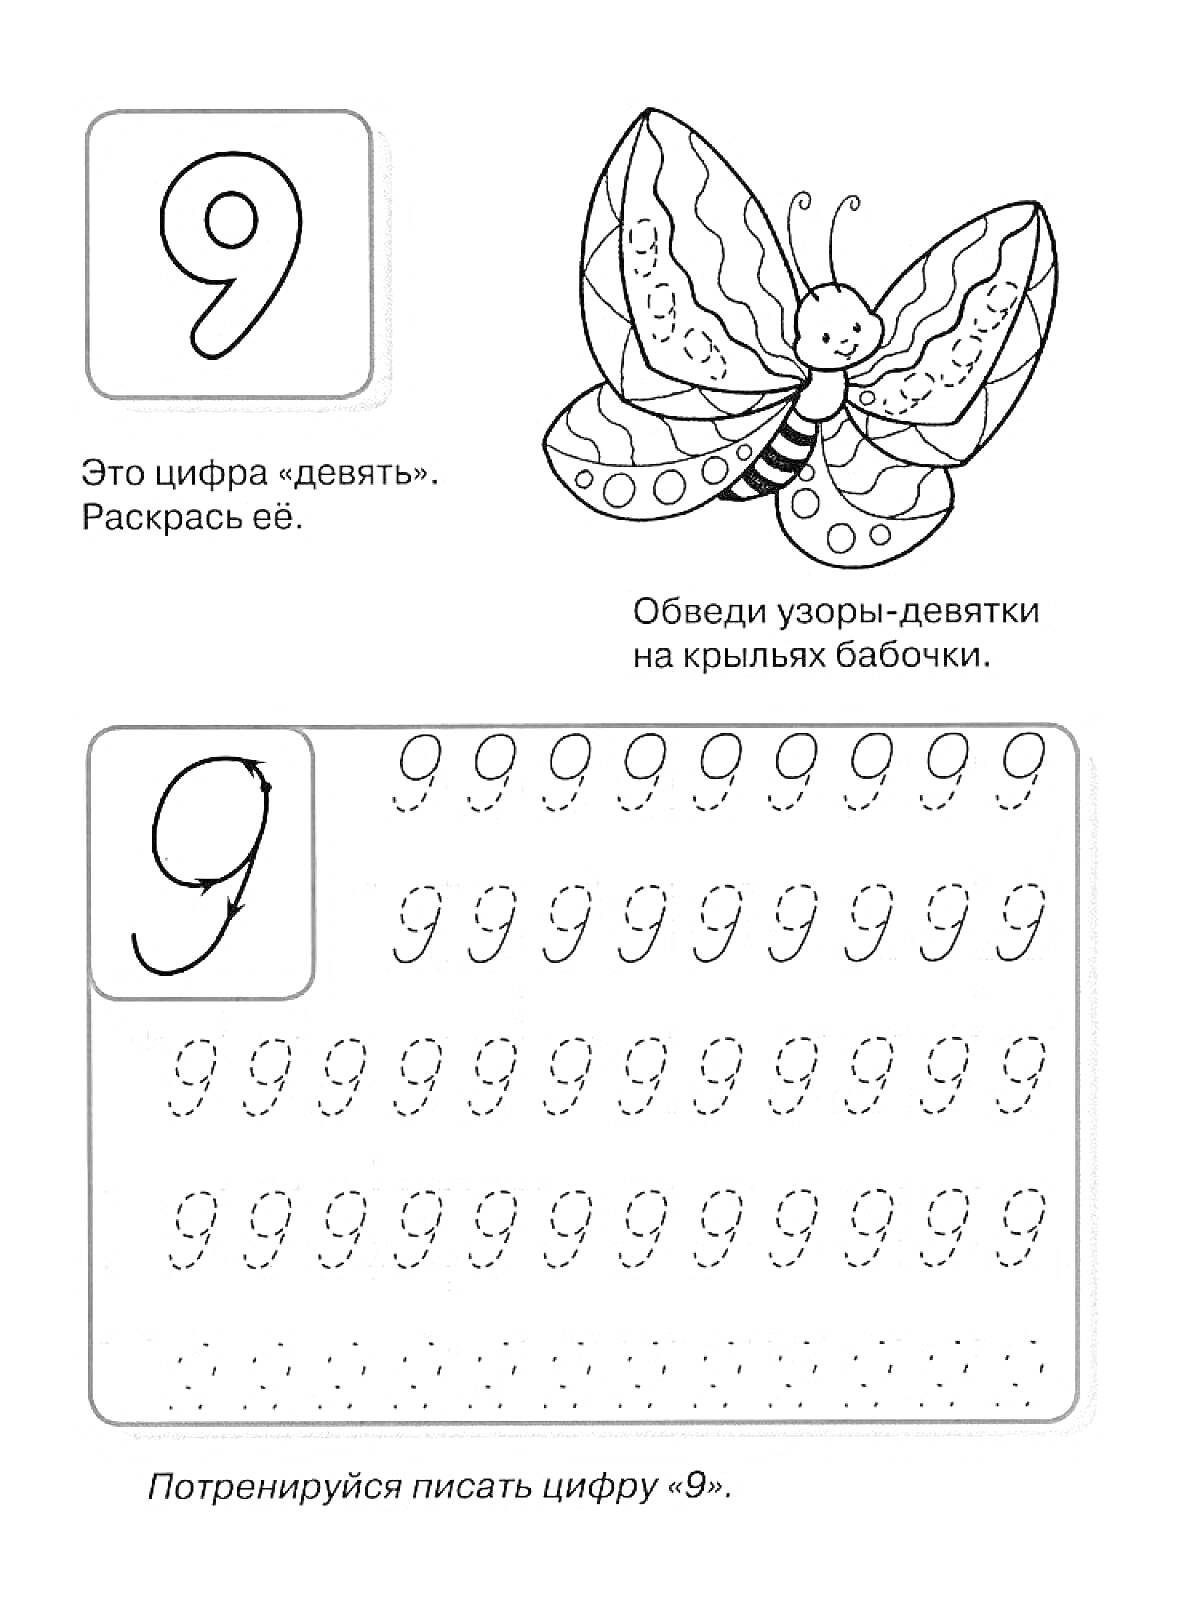 Прописи для цифры 9 с рисунком бабочки